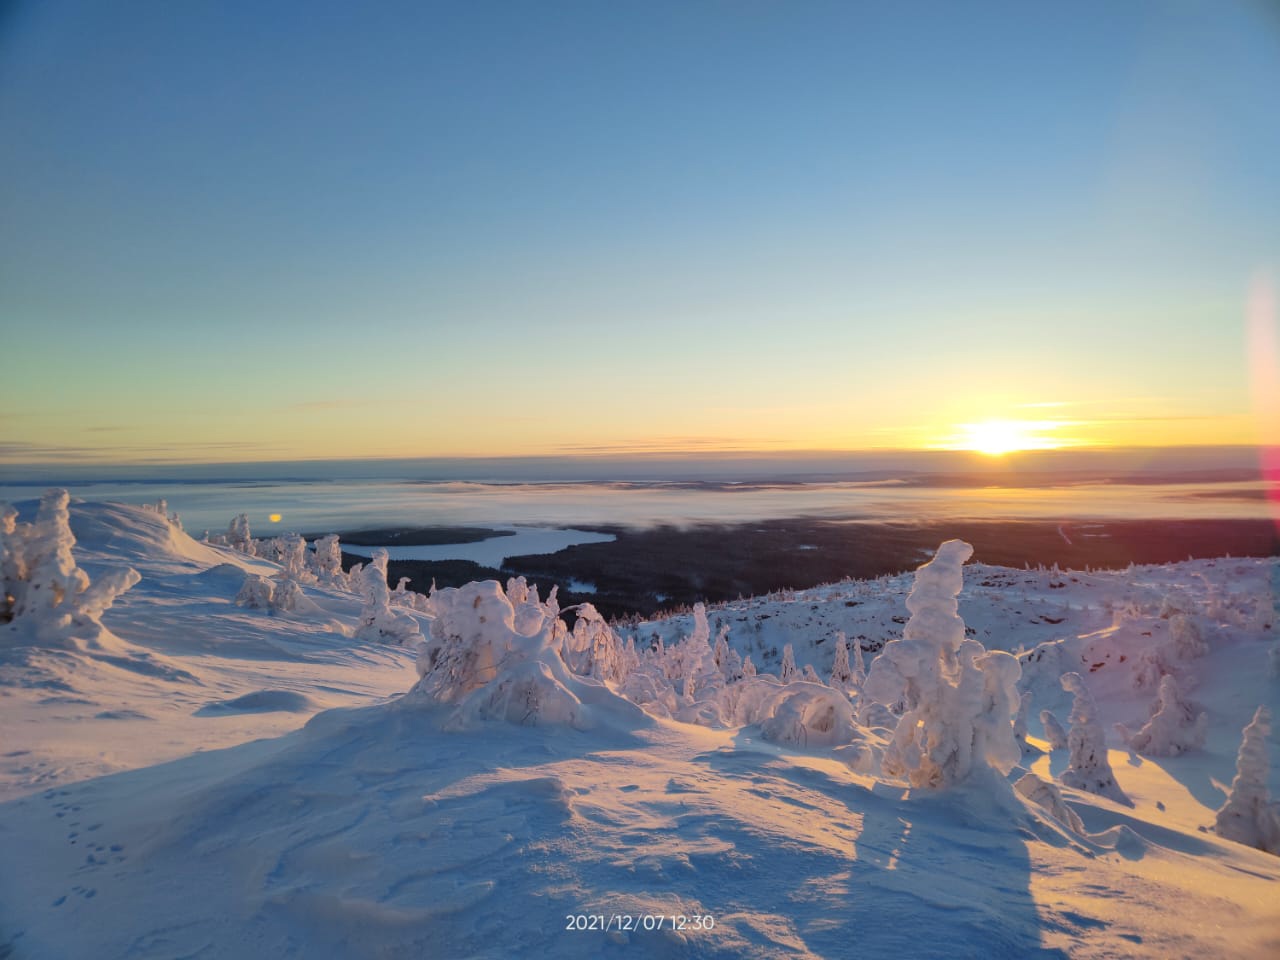 Опубликованы завораживающие кадры из национального парка «Паанаярви» в Карелии, где уже был мороз под -30 градусов (ФОТО)  